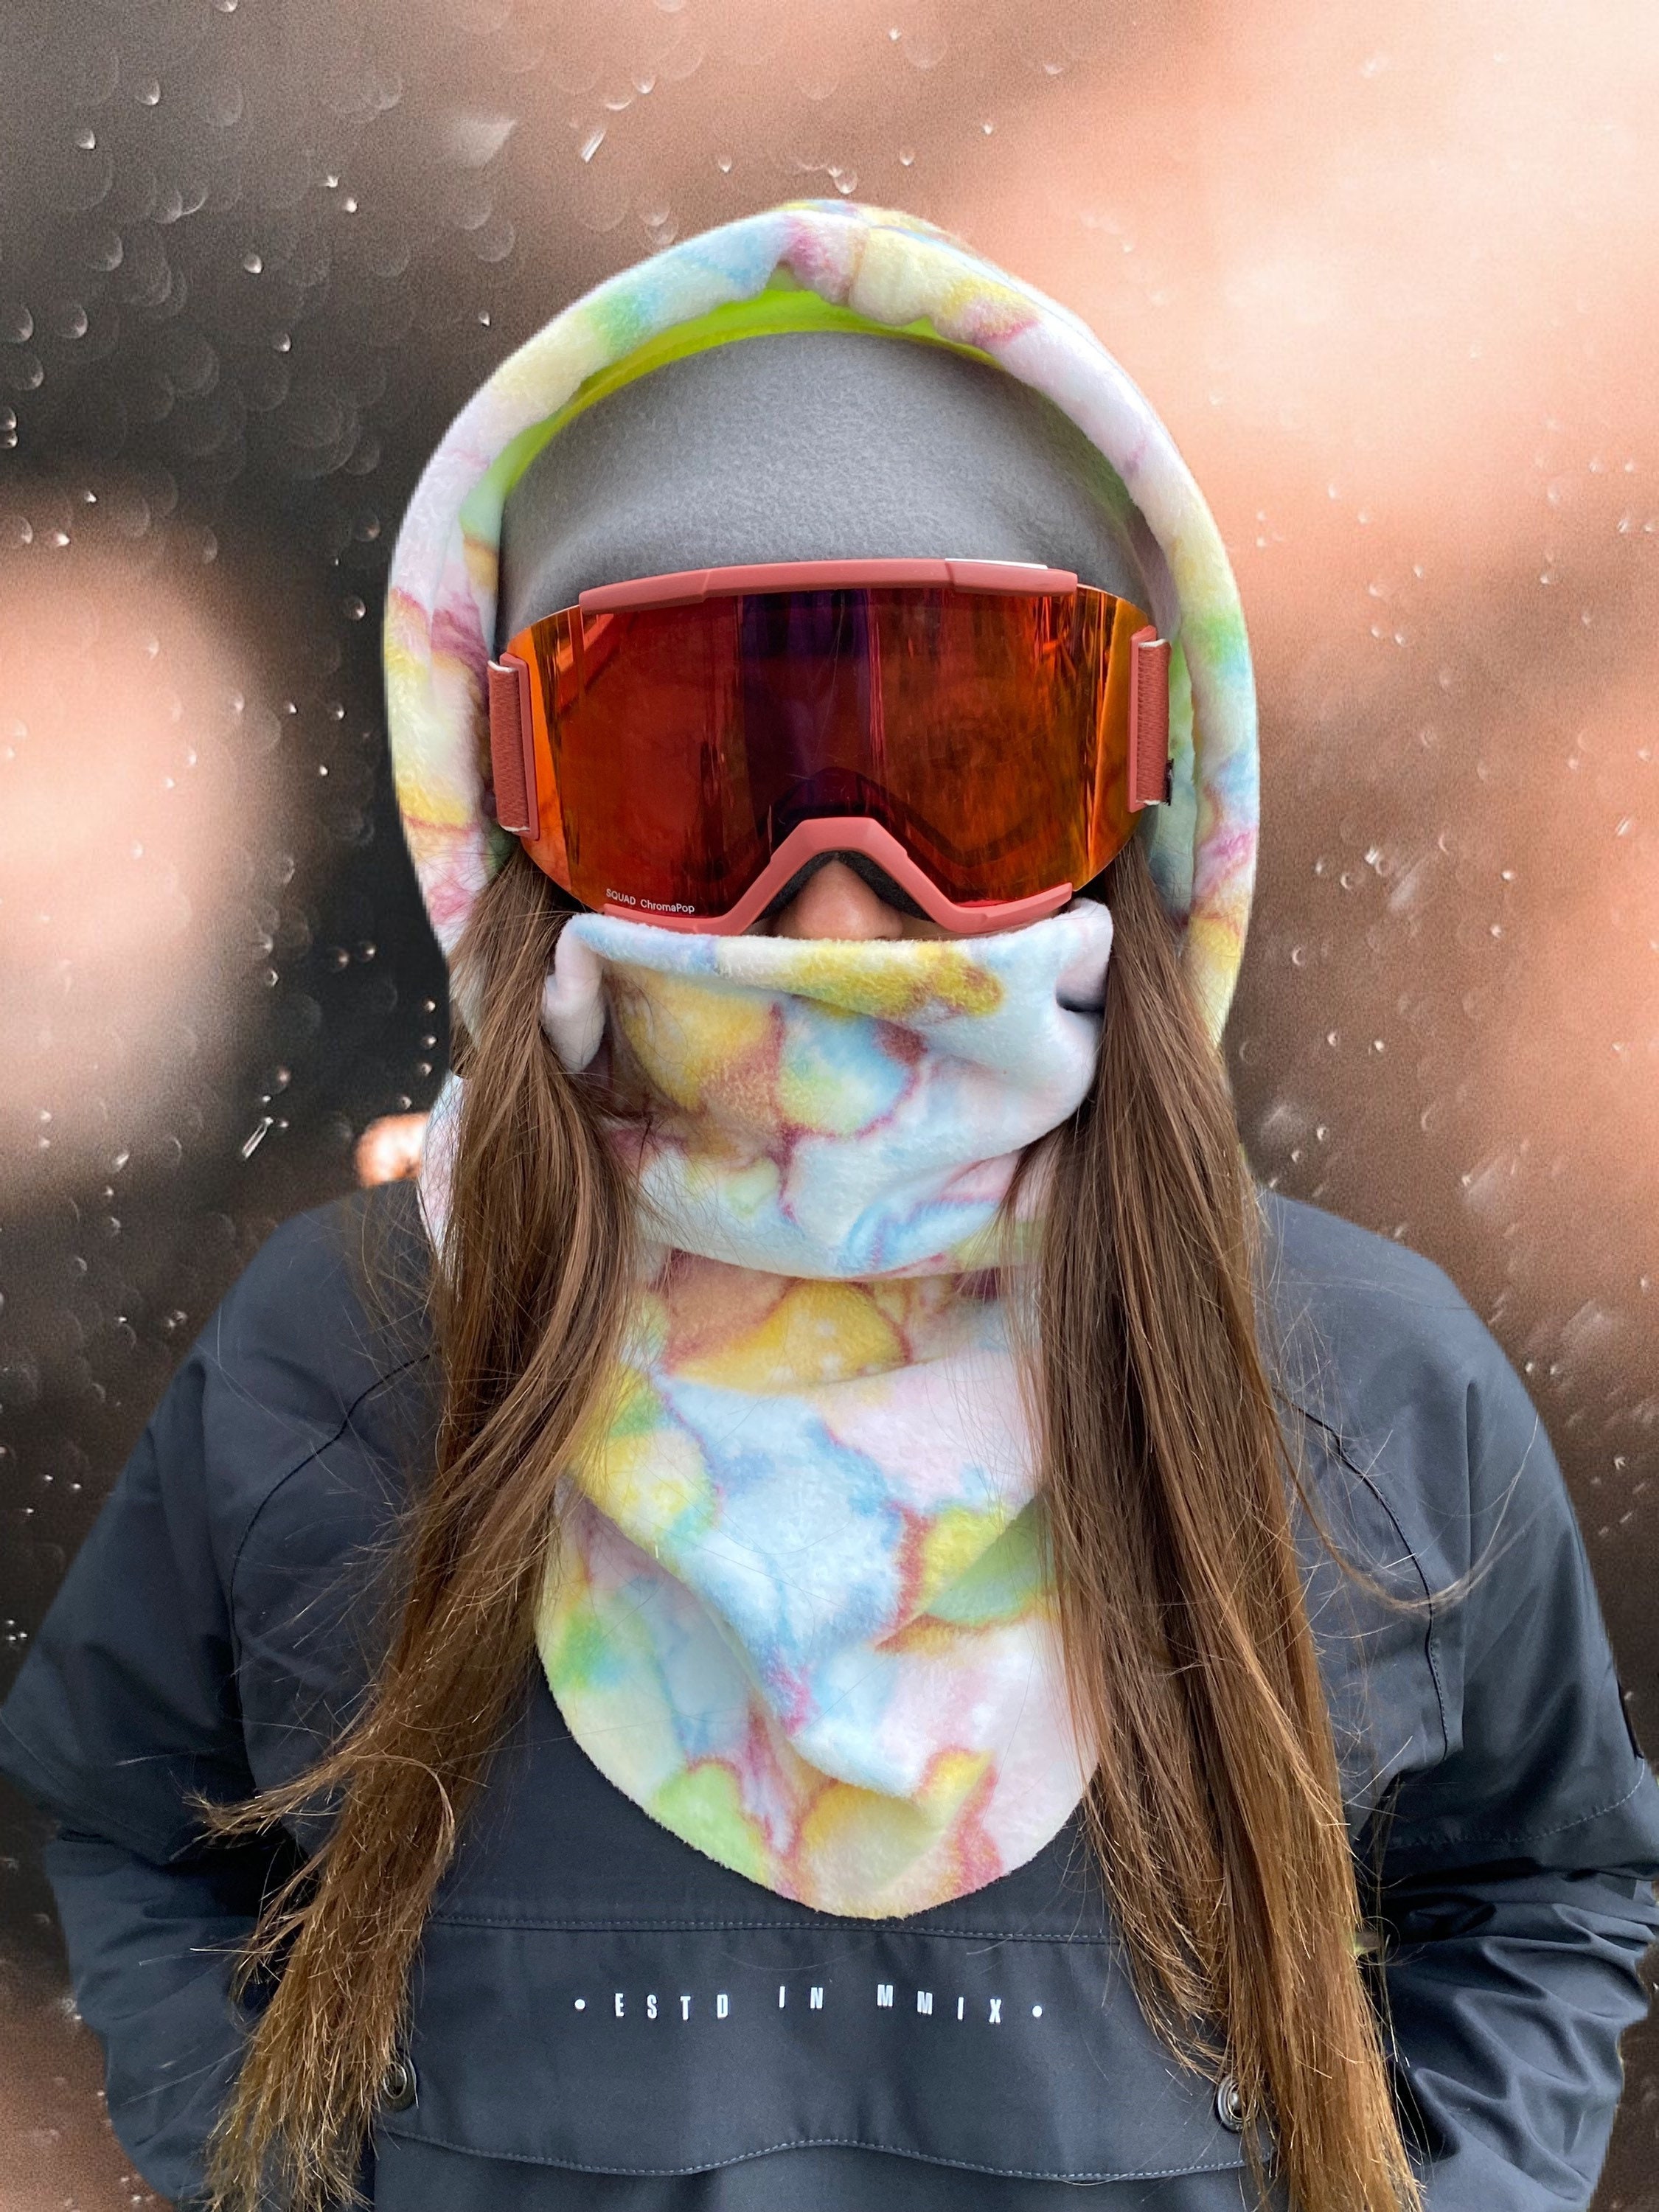 20 tenues de ski mignonnes pour les femmes